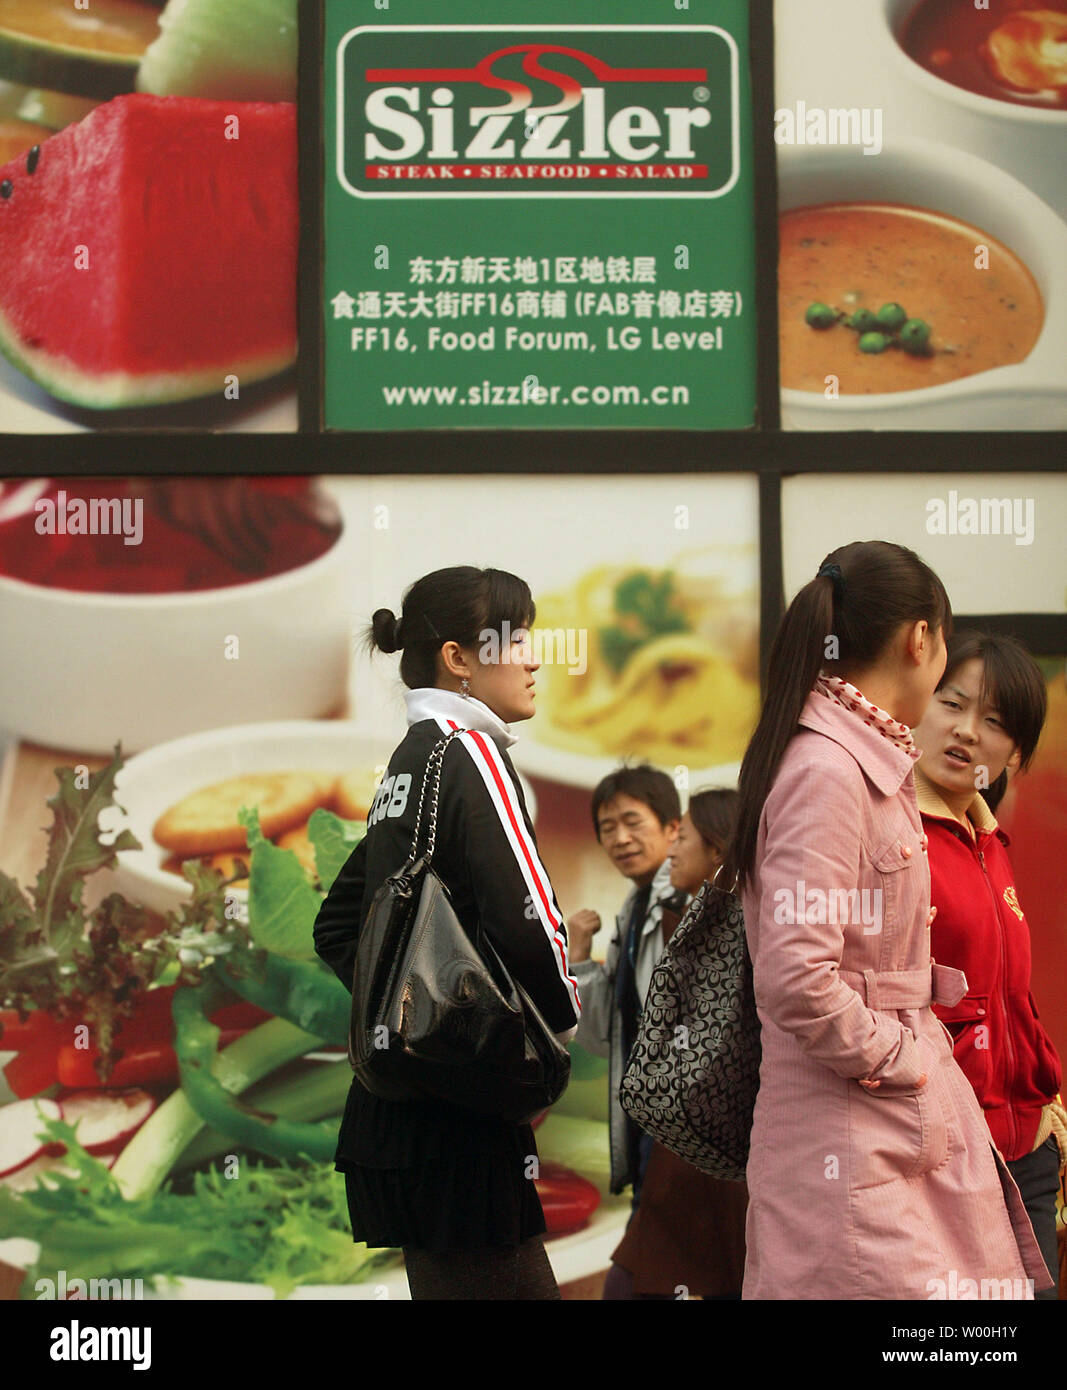 Chinesische Fußgänger vorbei ein U.S.-basierter Sizzler Franchise in der Innenstadt von Peking, China, am 14. November 2007. Sizzler hat in die Reihen der amerikanischen Ikonen wie McDonalds, Pizza Hut und Kentucky Fried Chicken, das eine starke Präsenz in China gegründet haben. (UPI Foto/Stephen Rasierer) Stockfoto